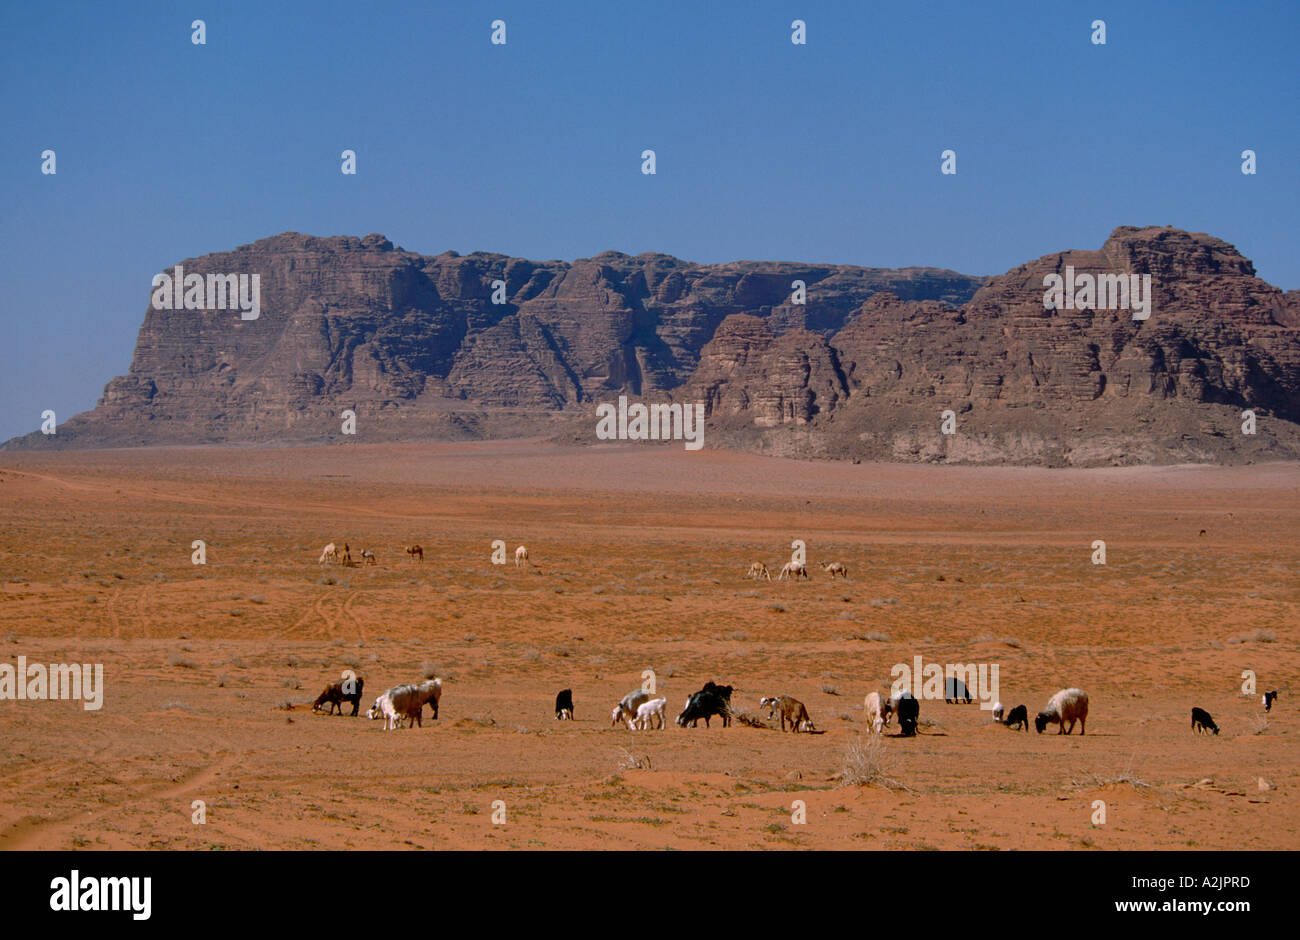 Asie - Jordanie - Wadi Rum - paysages de désert rouge du Wadi Rum, troupeau de chèvres Bédouins, les chameaux dans la distance Banque D'Images